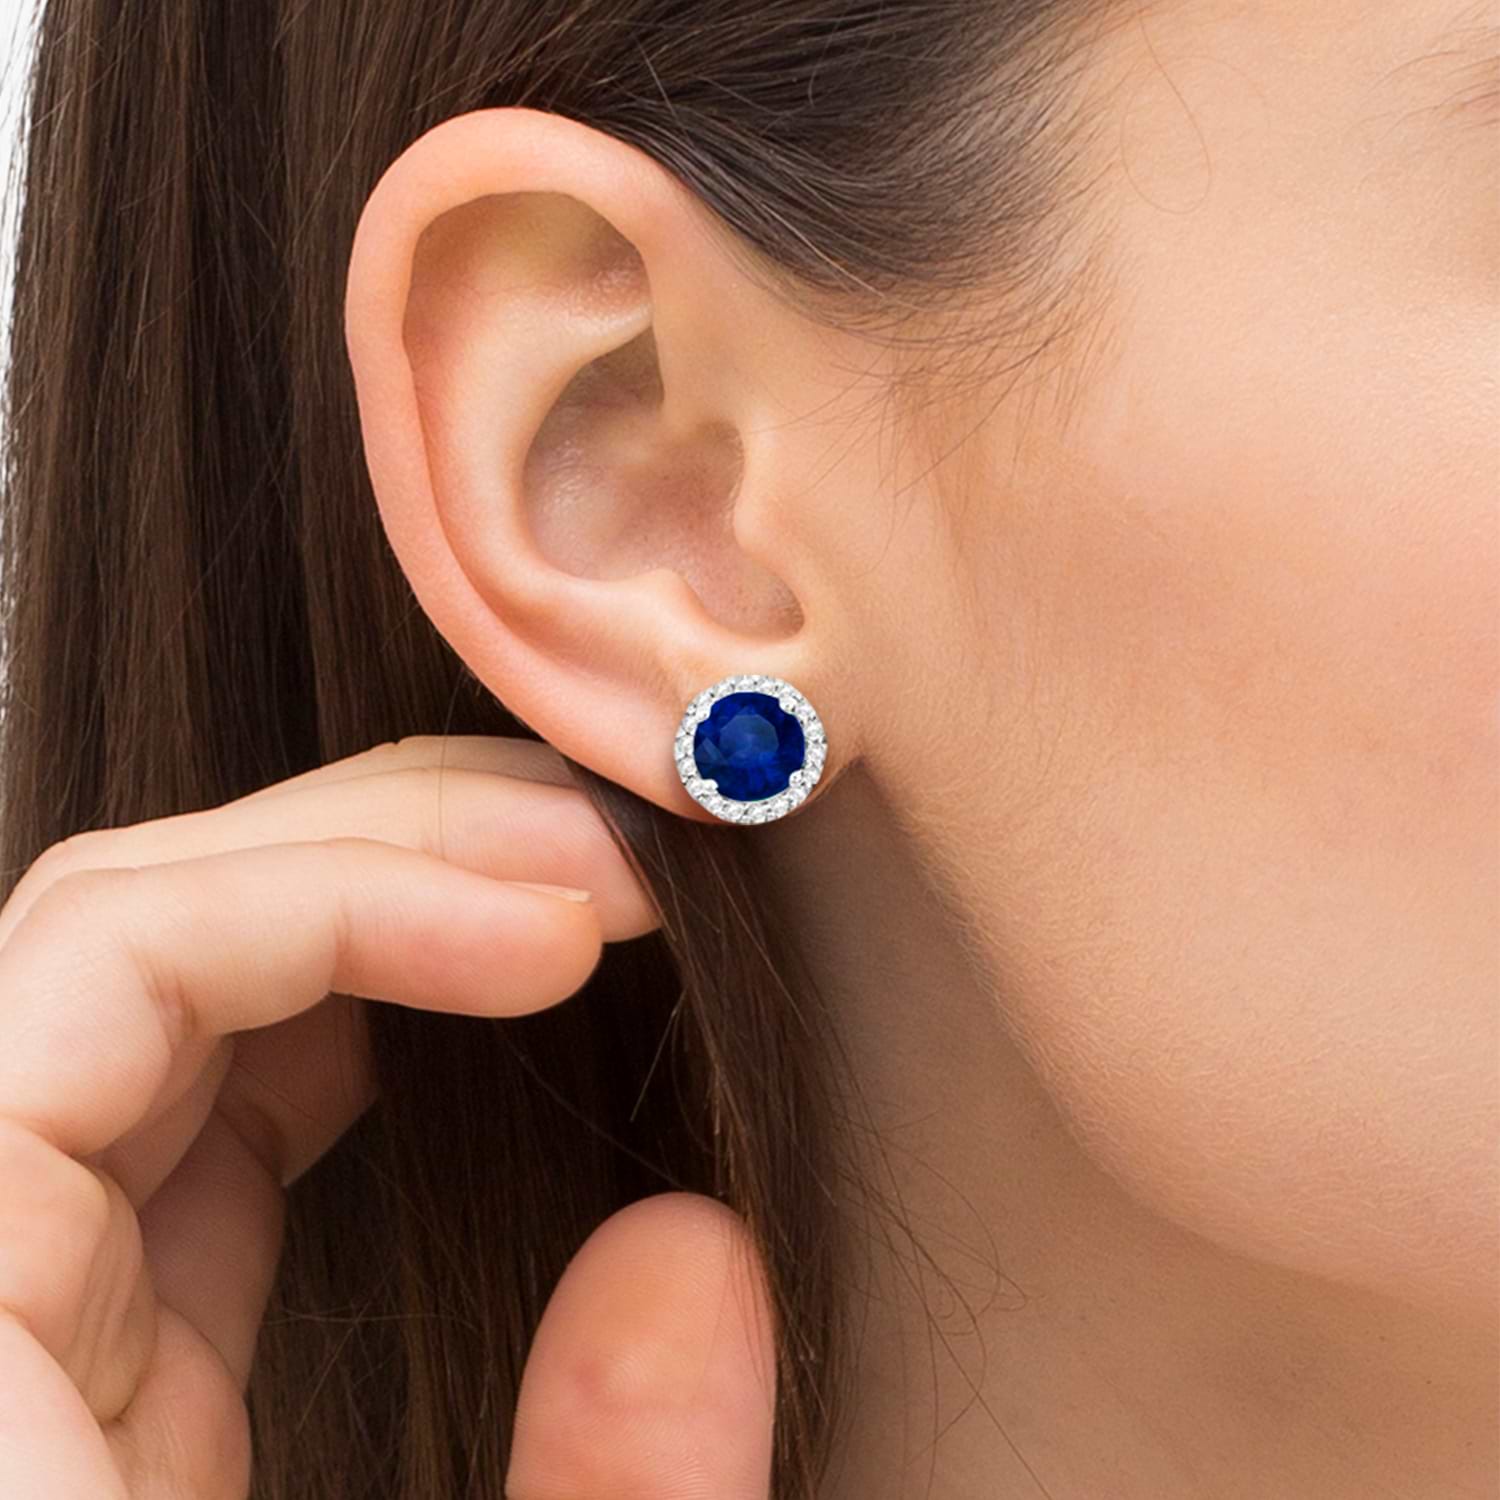 Blue Sapphire & Diamond Halo Stud Earrings in Sterling Silver 2.27ct